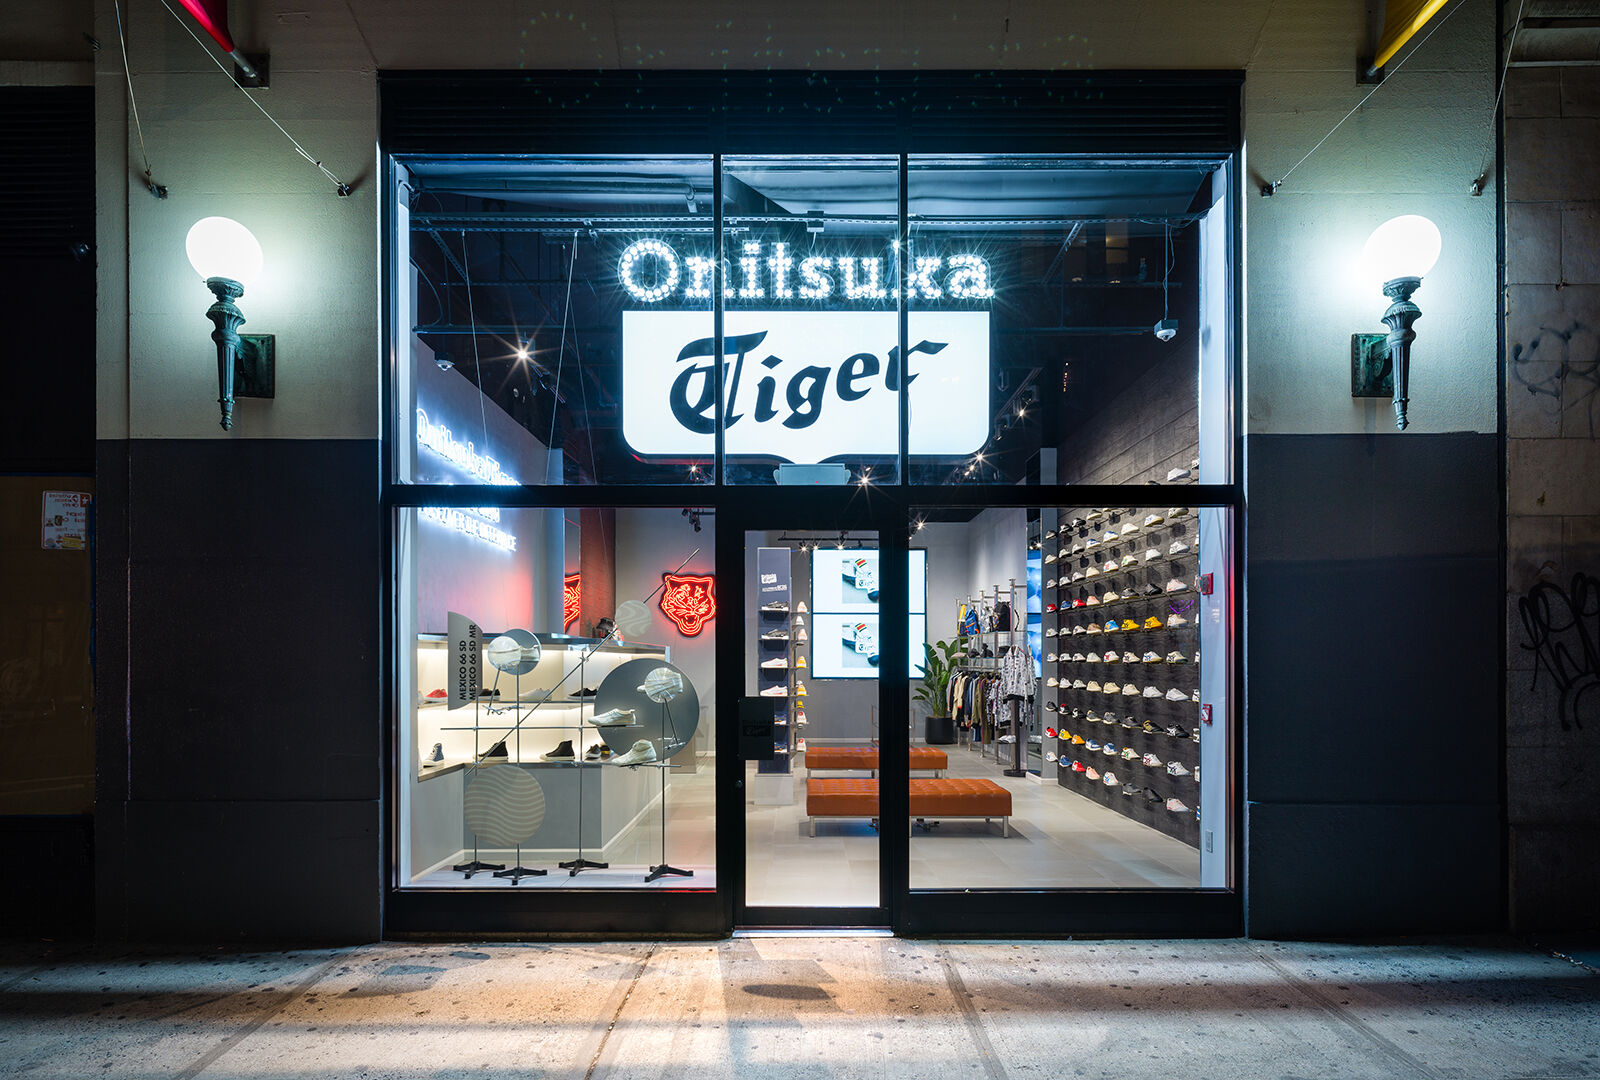 Onitsuka Tiger Stores